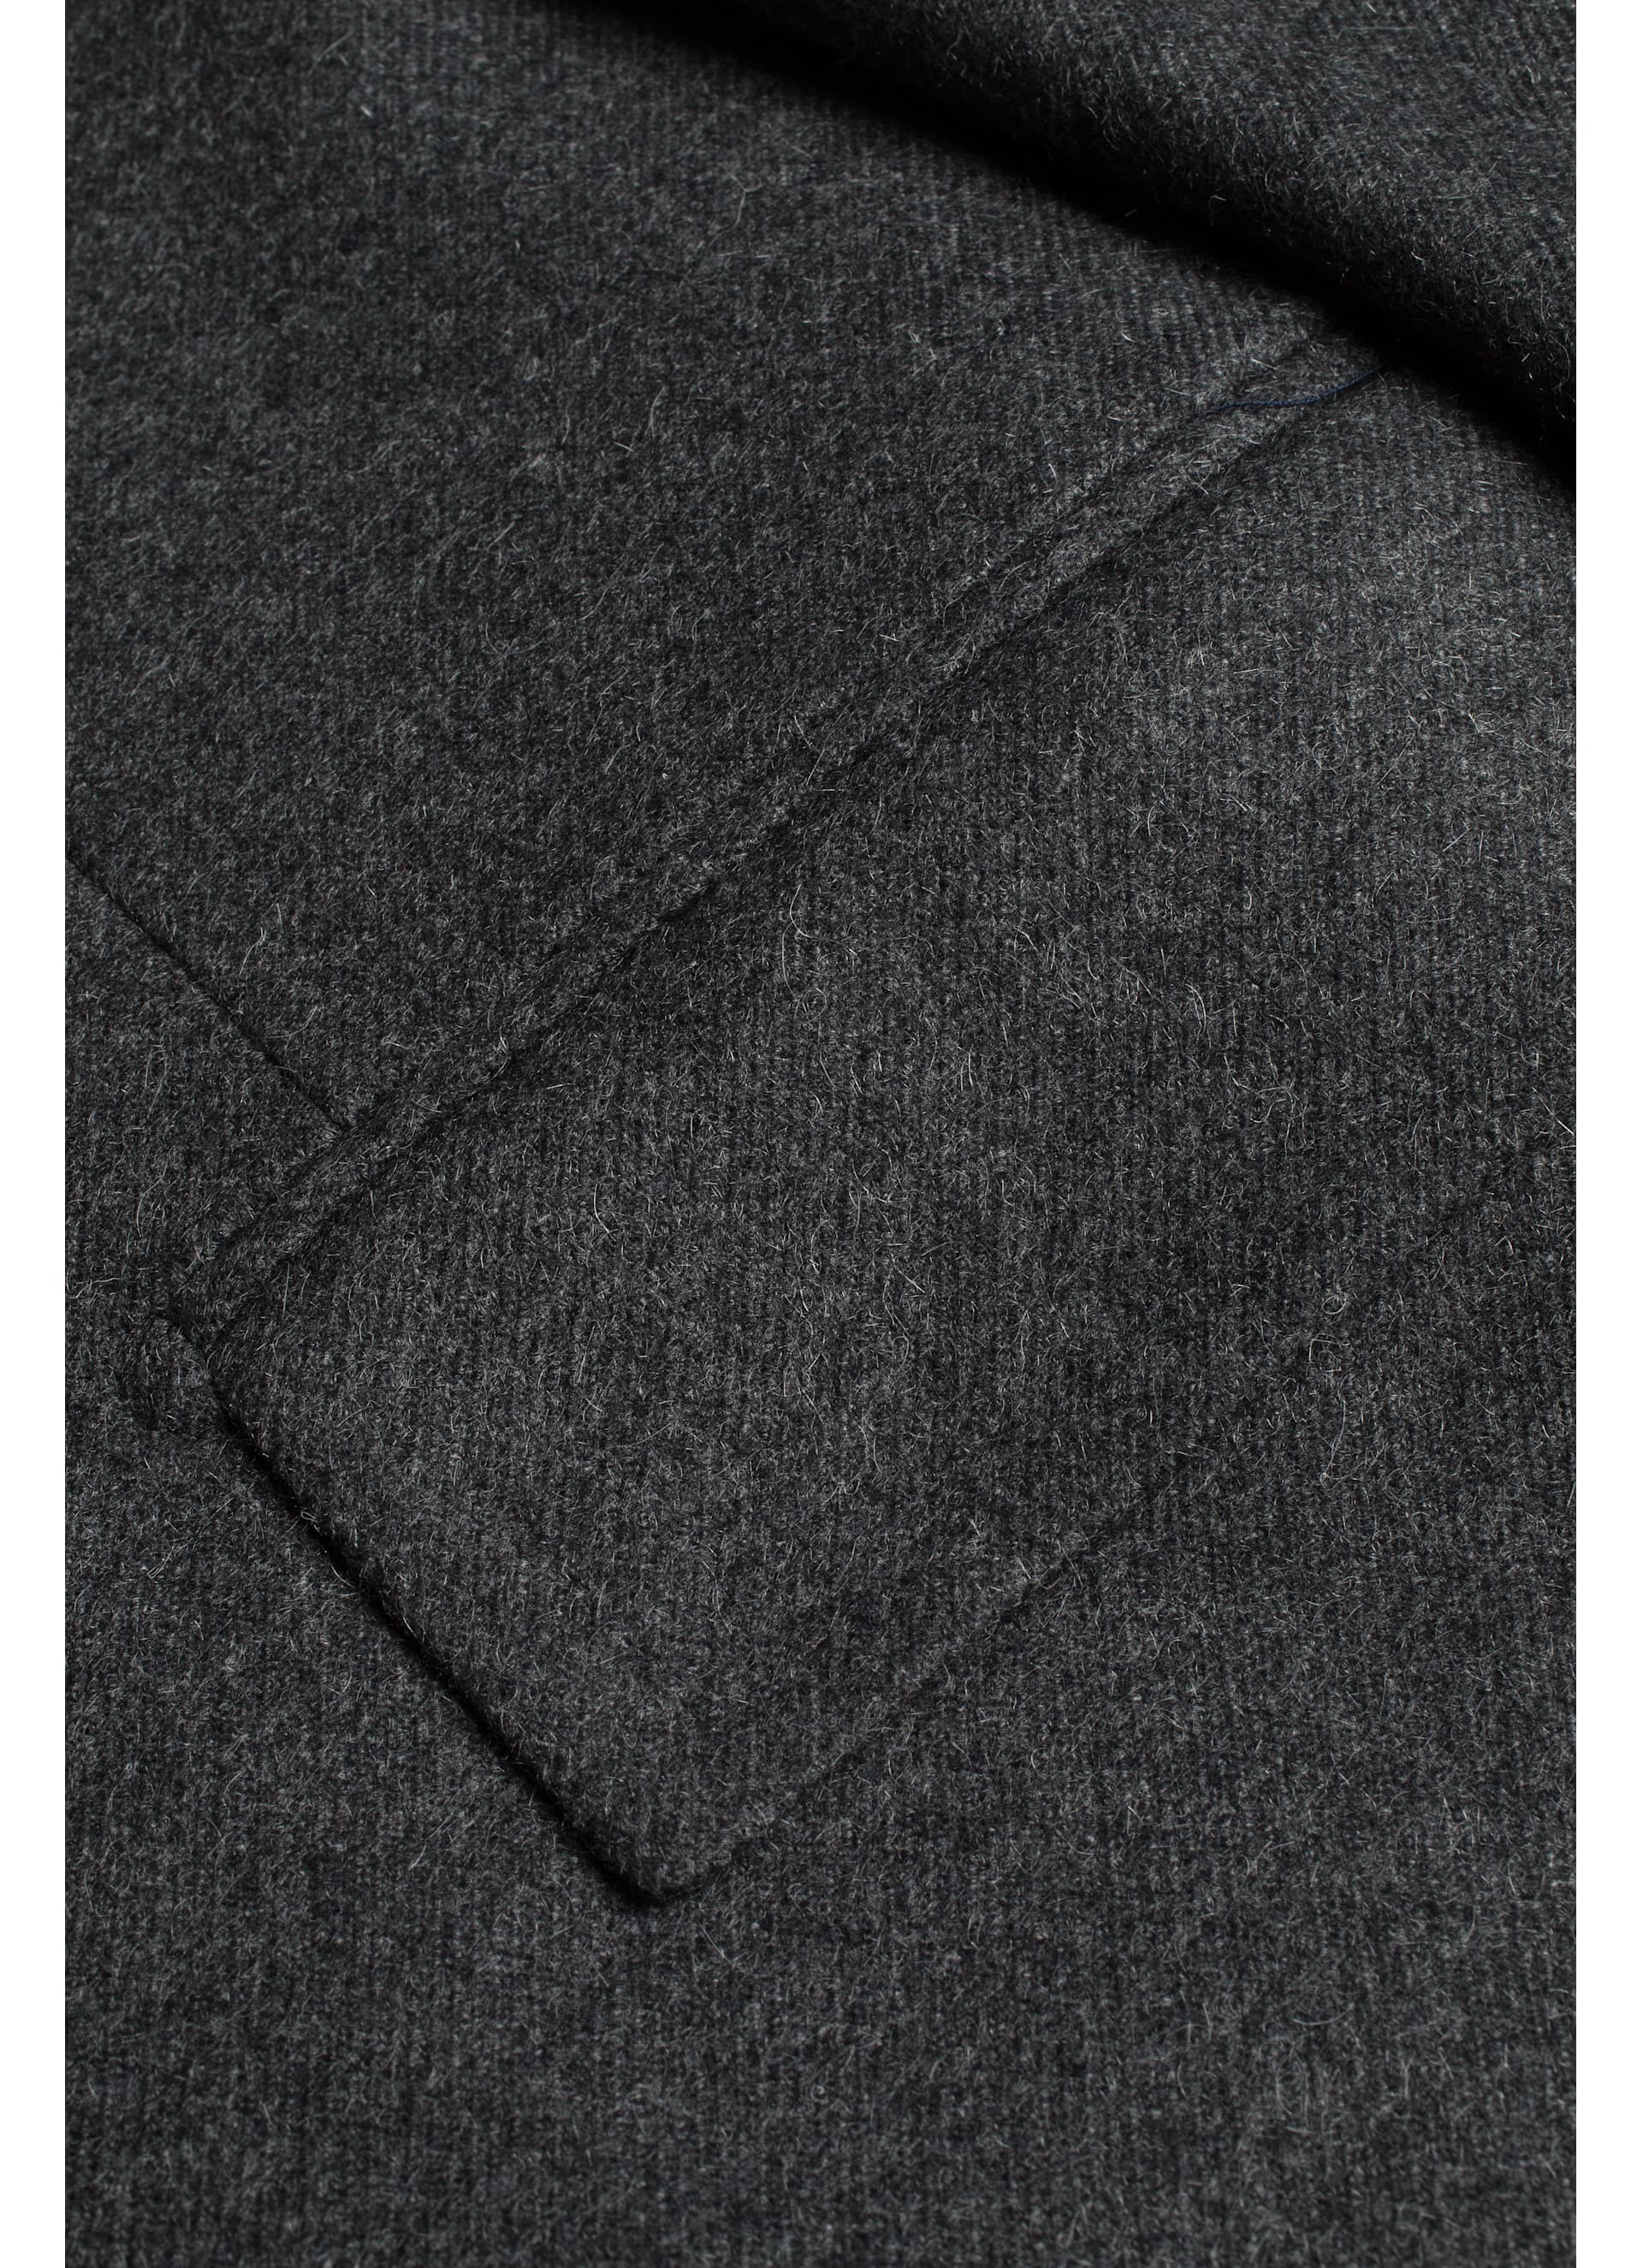 Jort Grey Overcoat J566i | Suitsupply Online Store